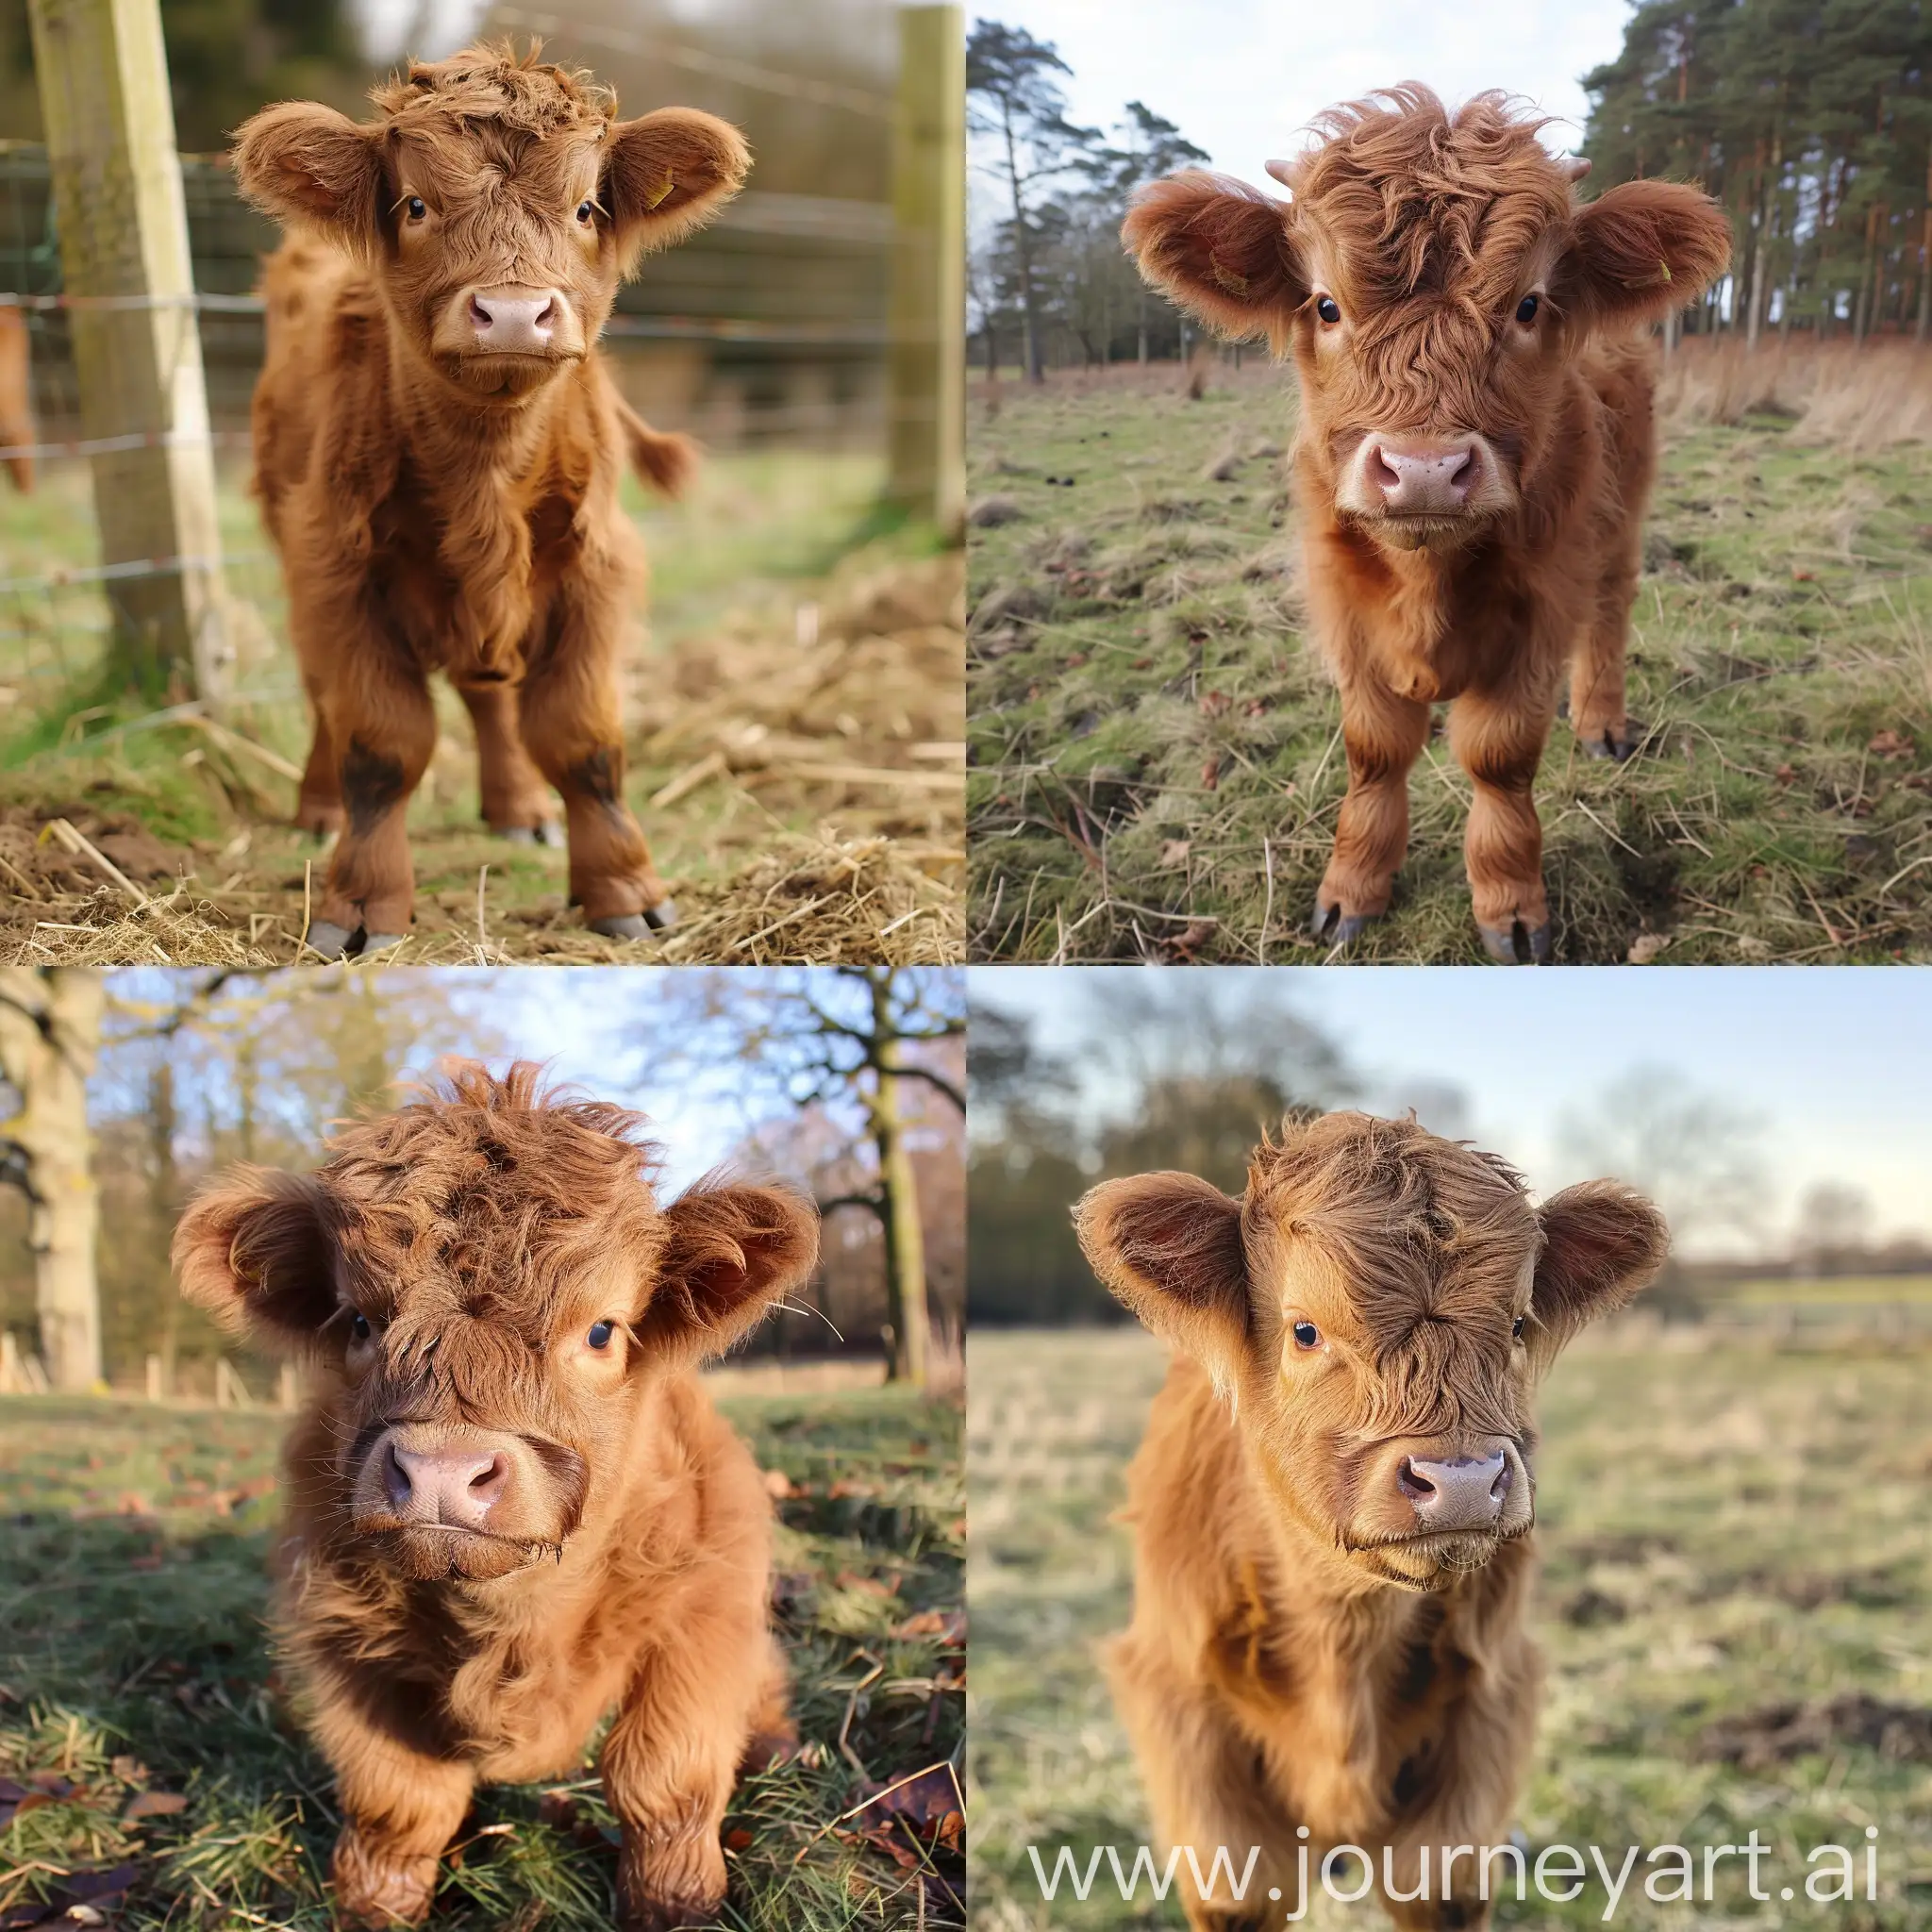 Cute mini highland cow